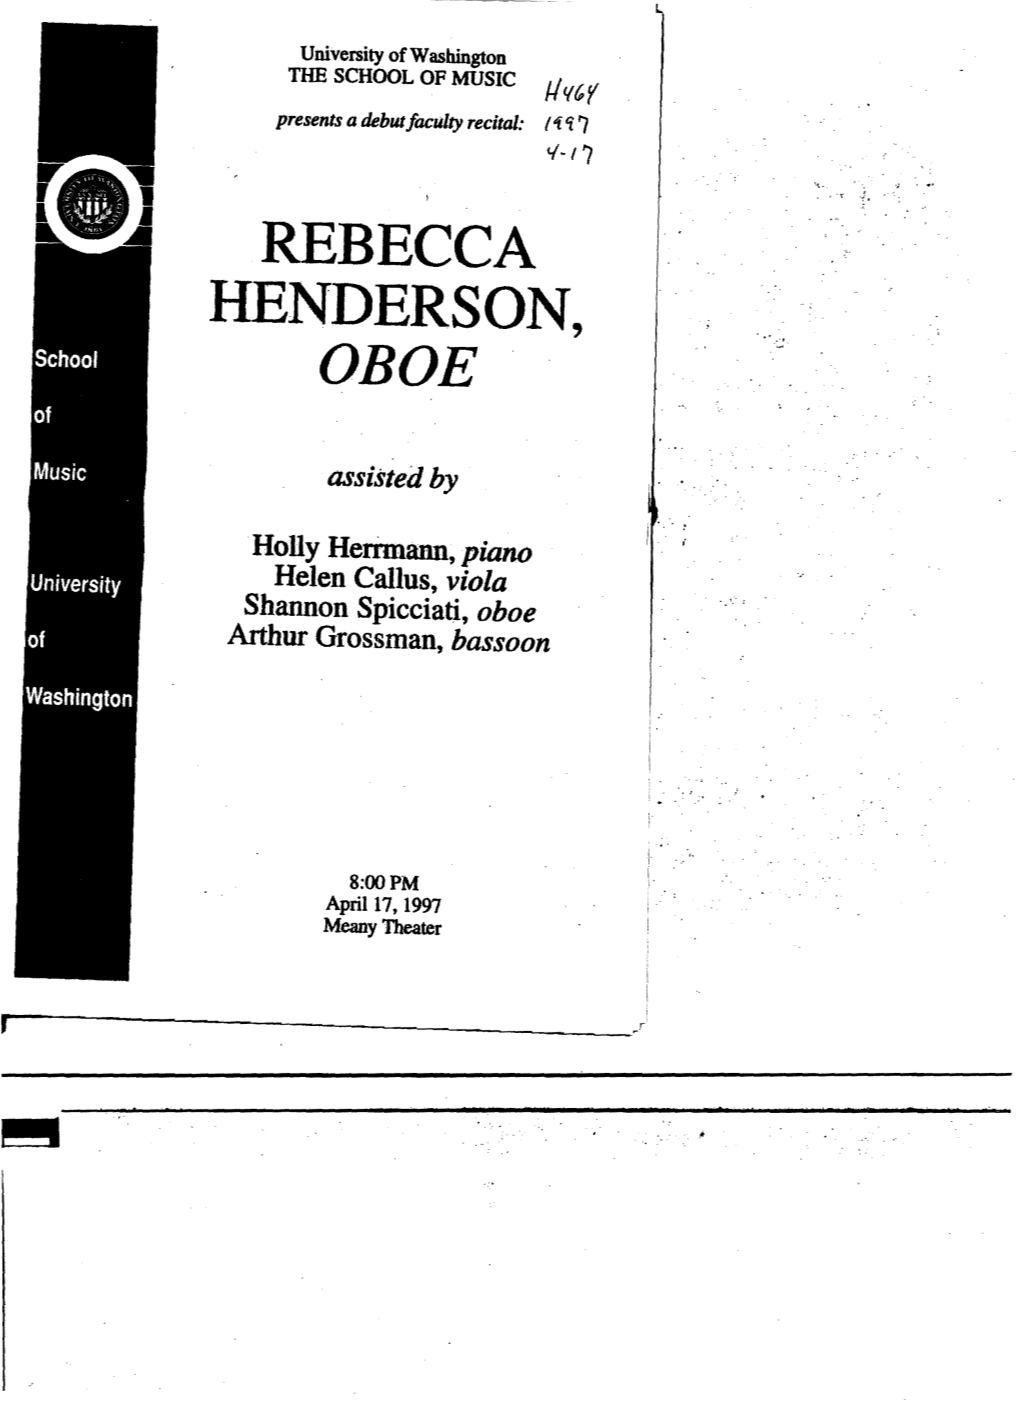 Rebecca Henderson, Oboe